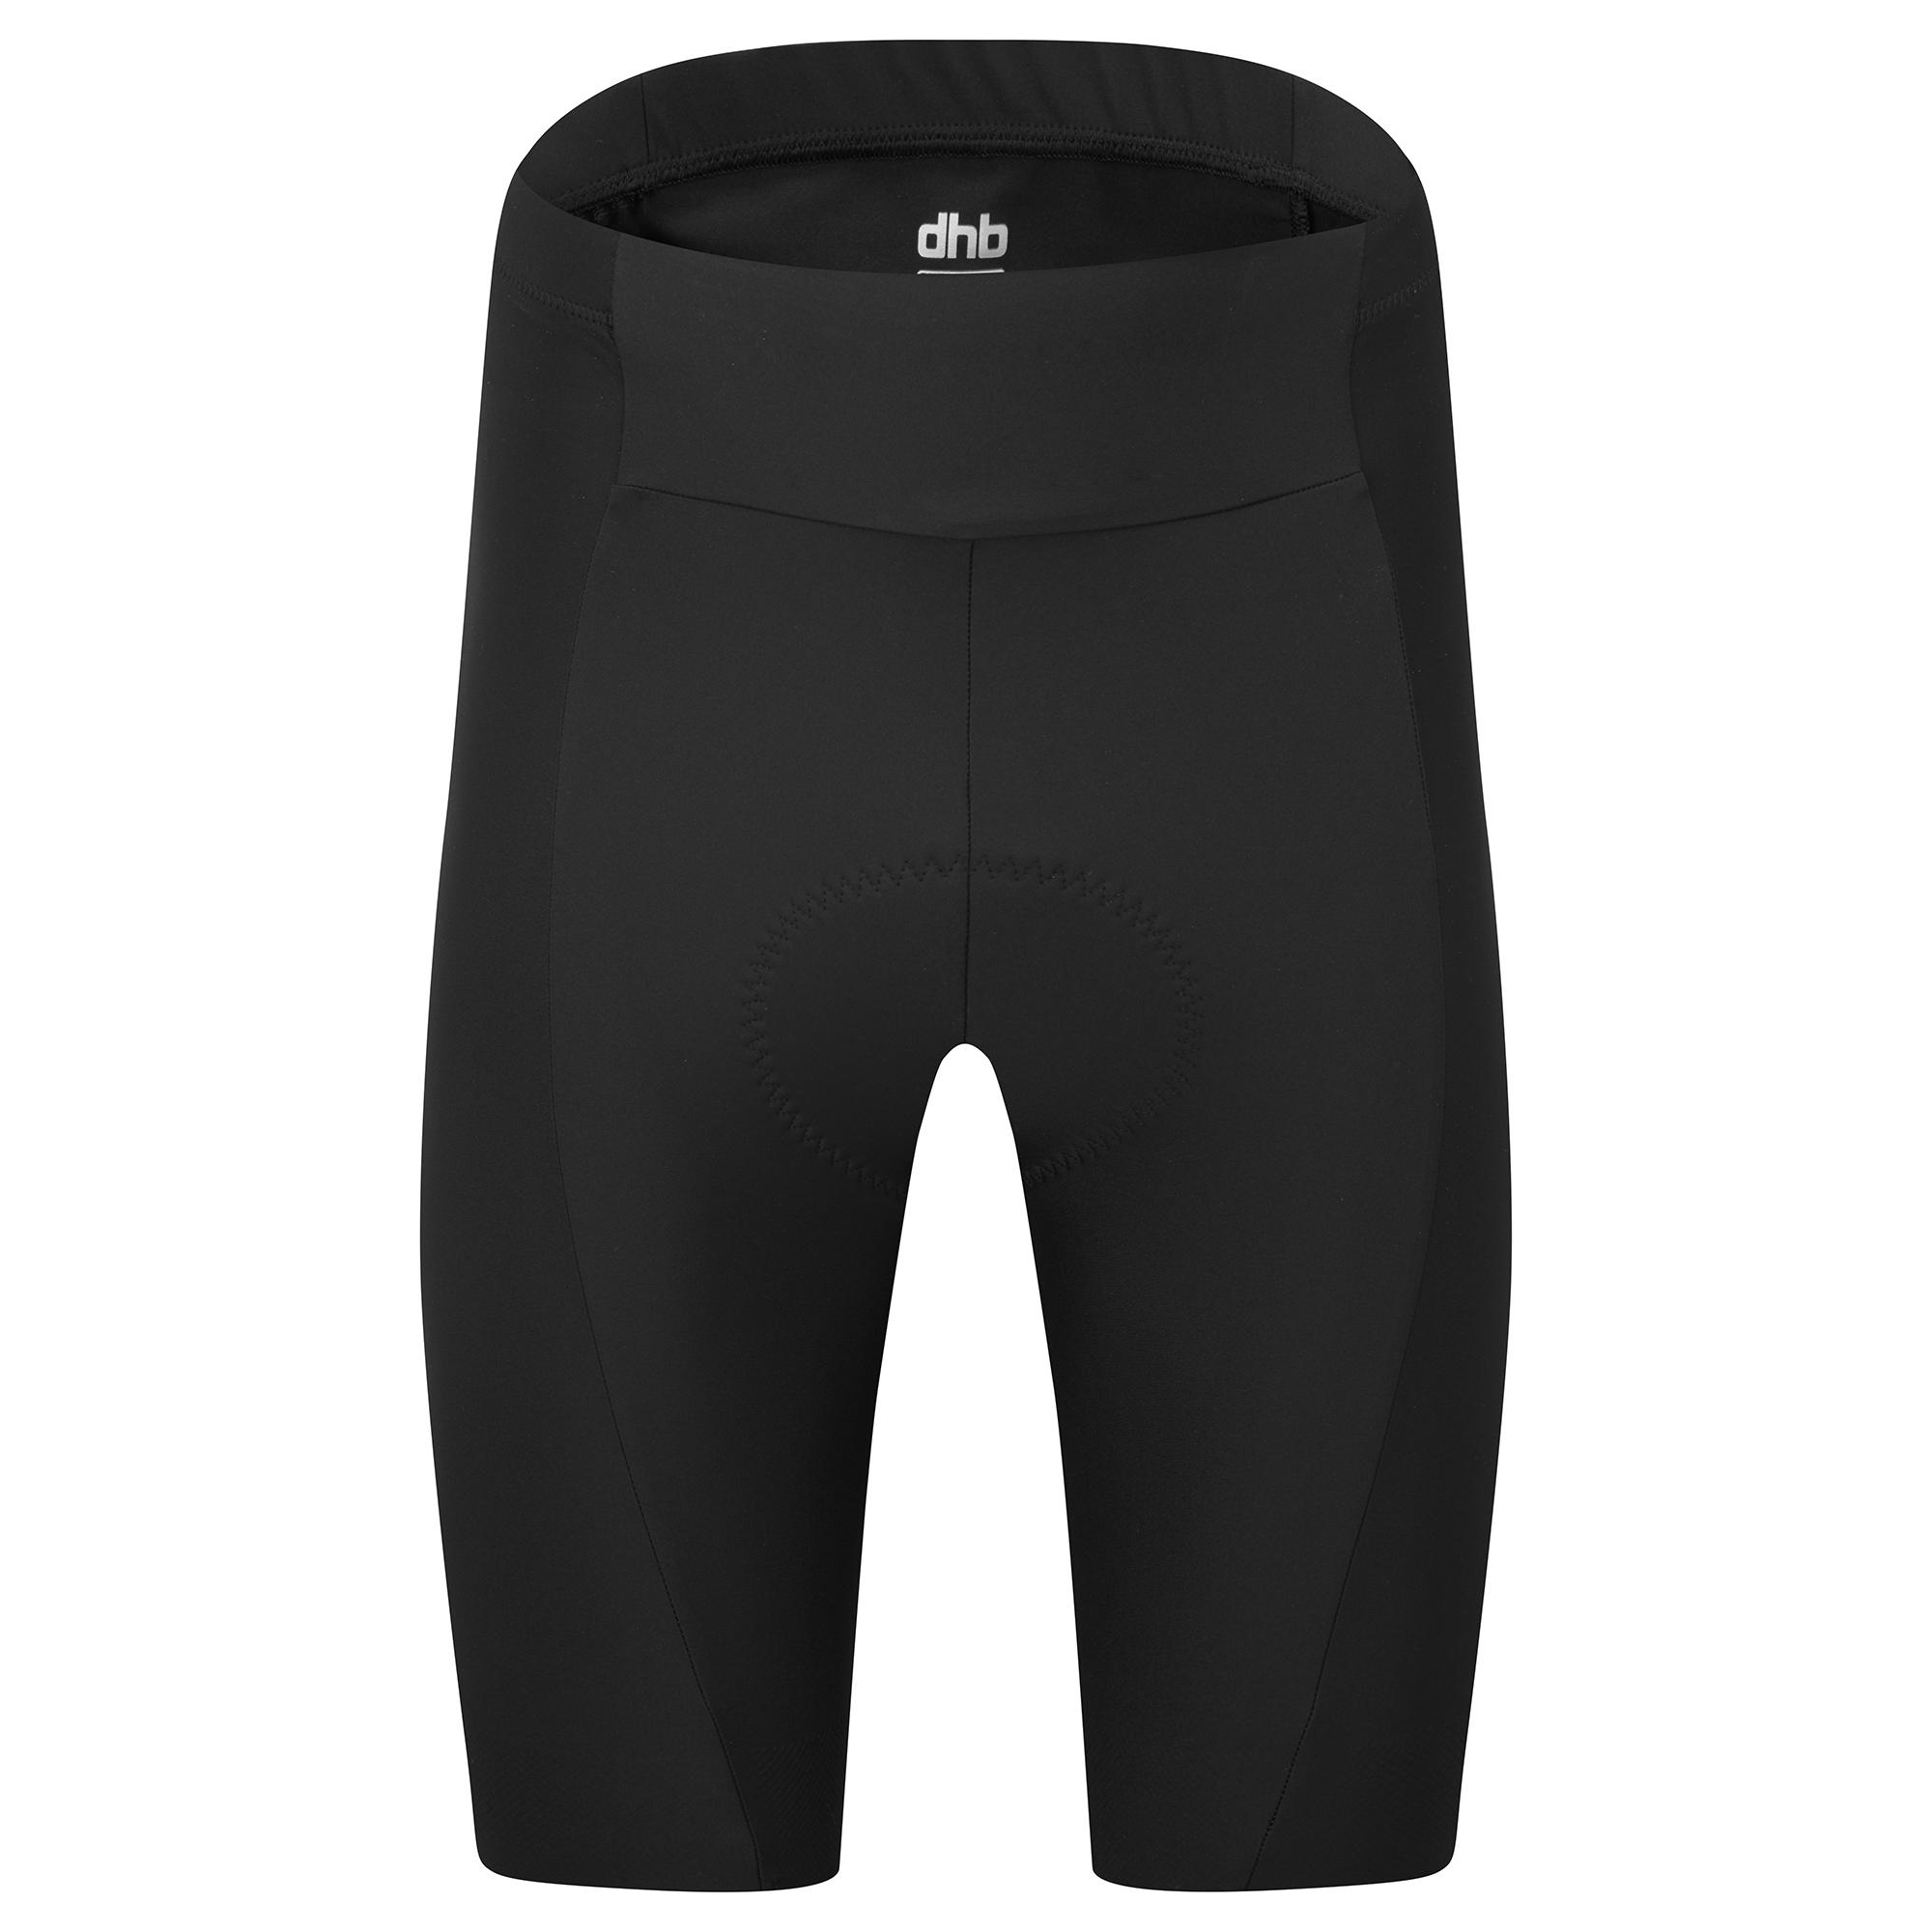 Dhb Aeron Mens Shorts 2.0 - Black/blue